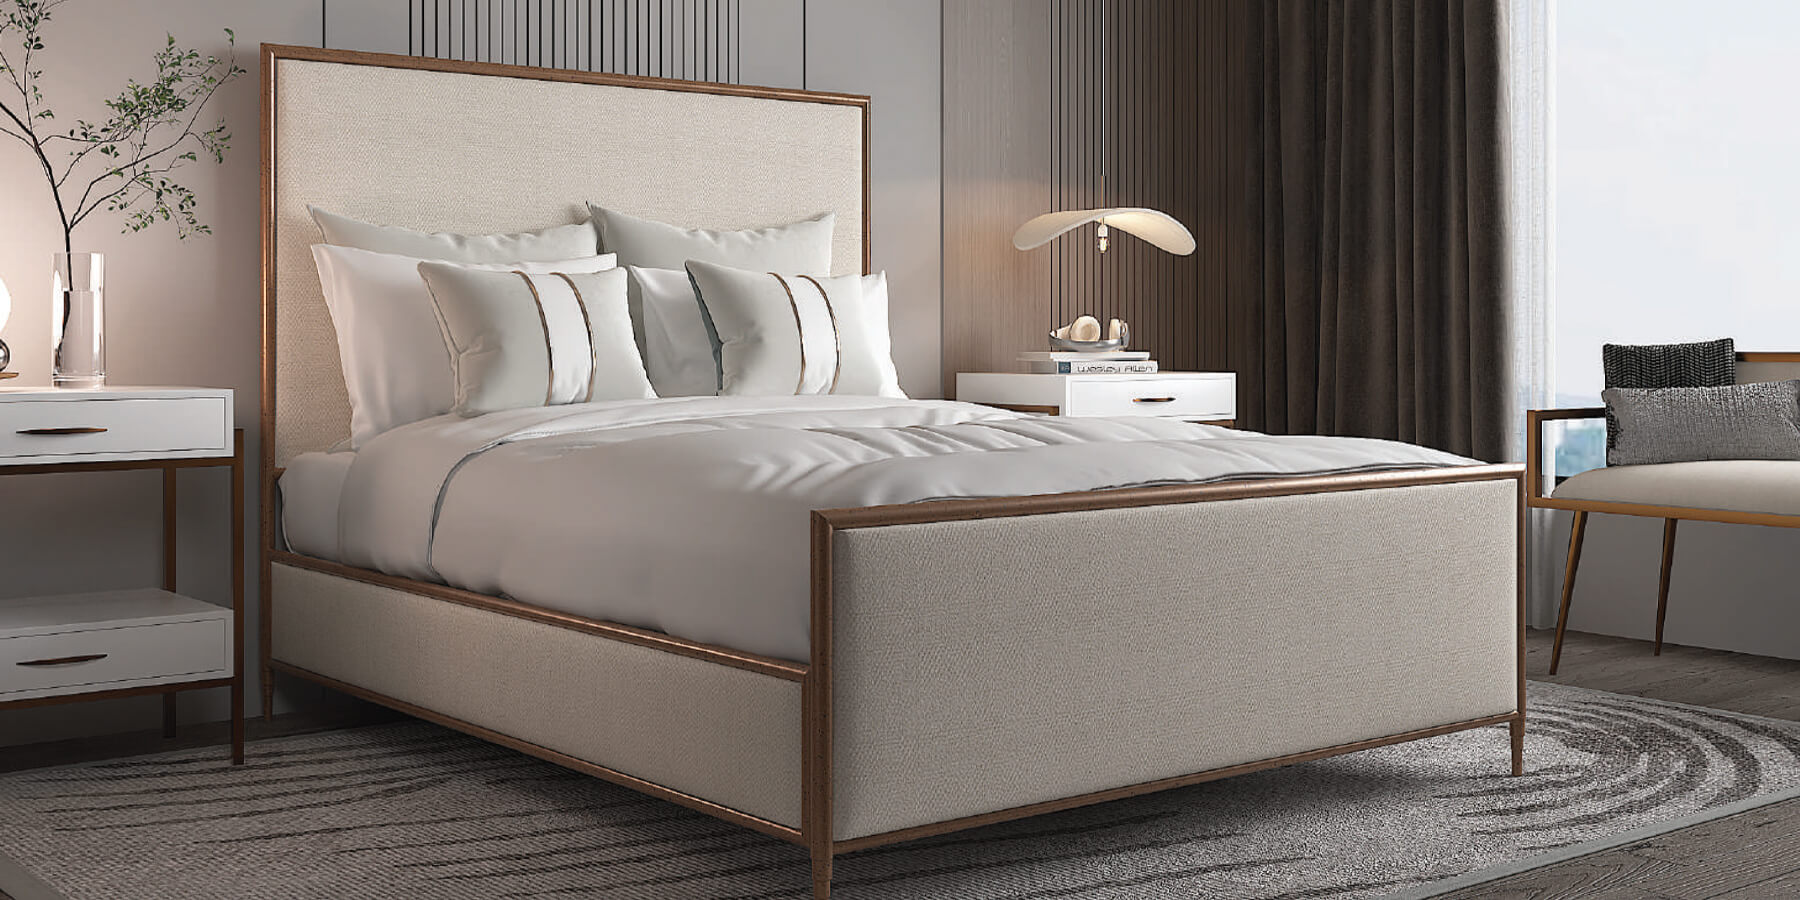 Wesley-Allen-Bed-Frames-and-Bedroom-Furniture